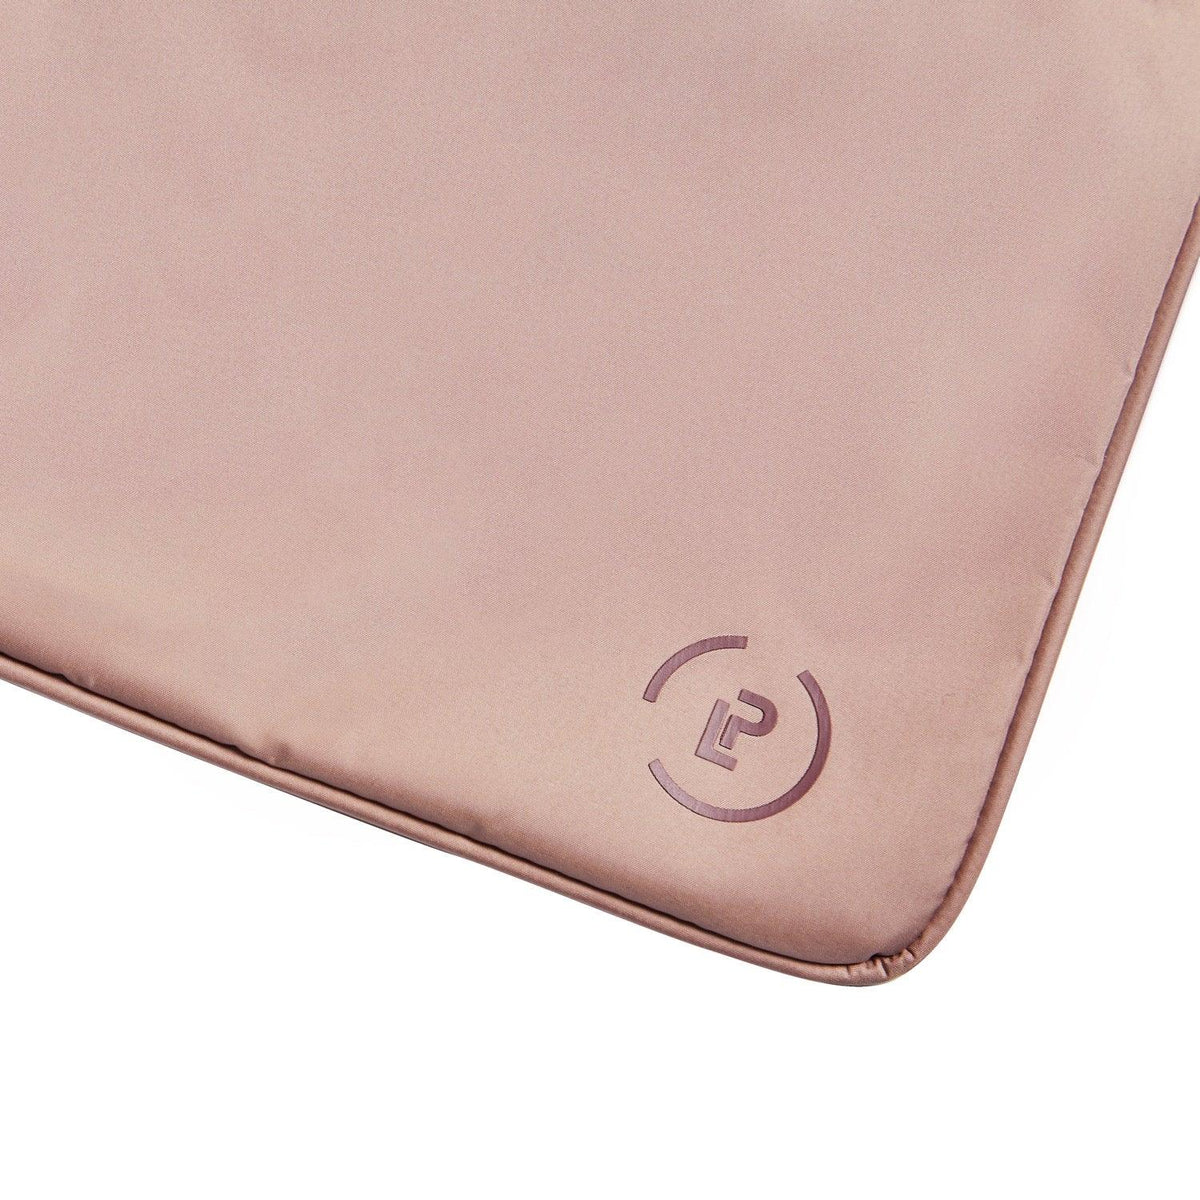 Sweat Bag in Rose Oxblood colourway La Pochette logo detail